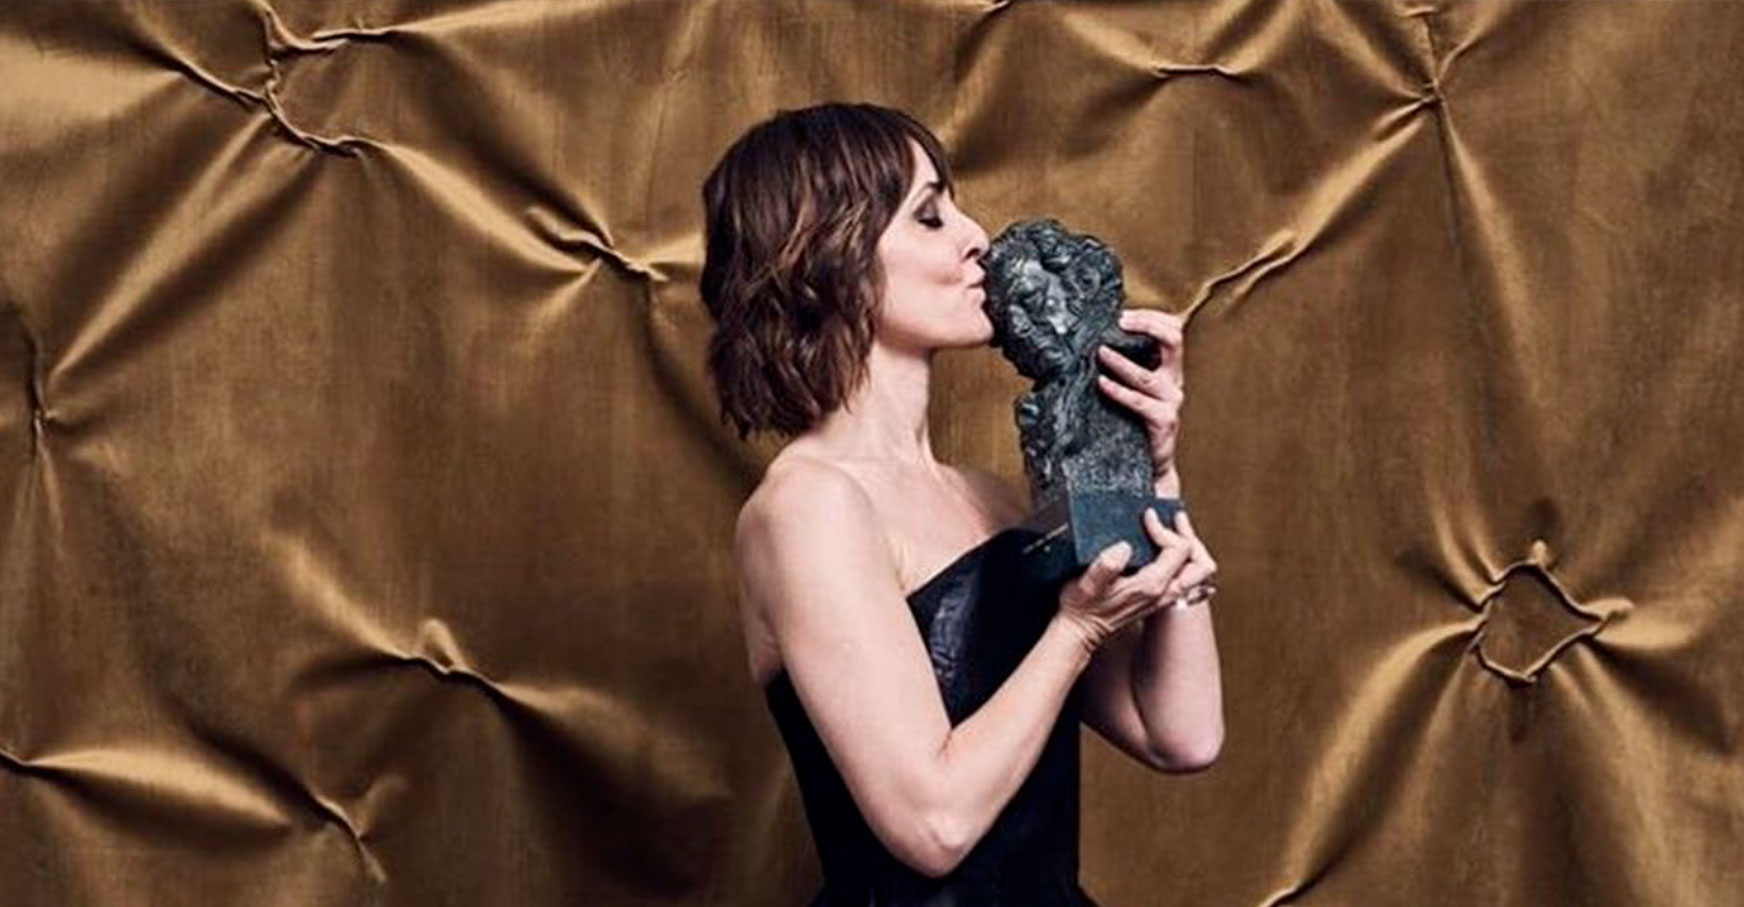 Natalie Poza ganadora del Goya a mejor actriz por «No sé decir adiós», co-producida por Womack Studios